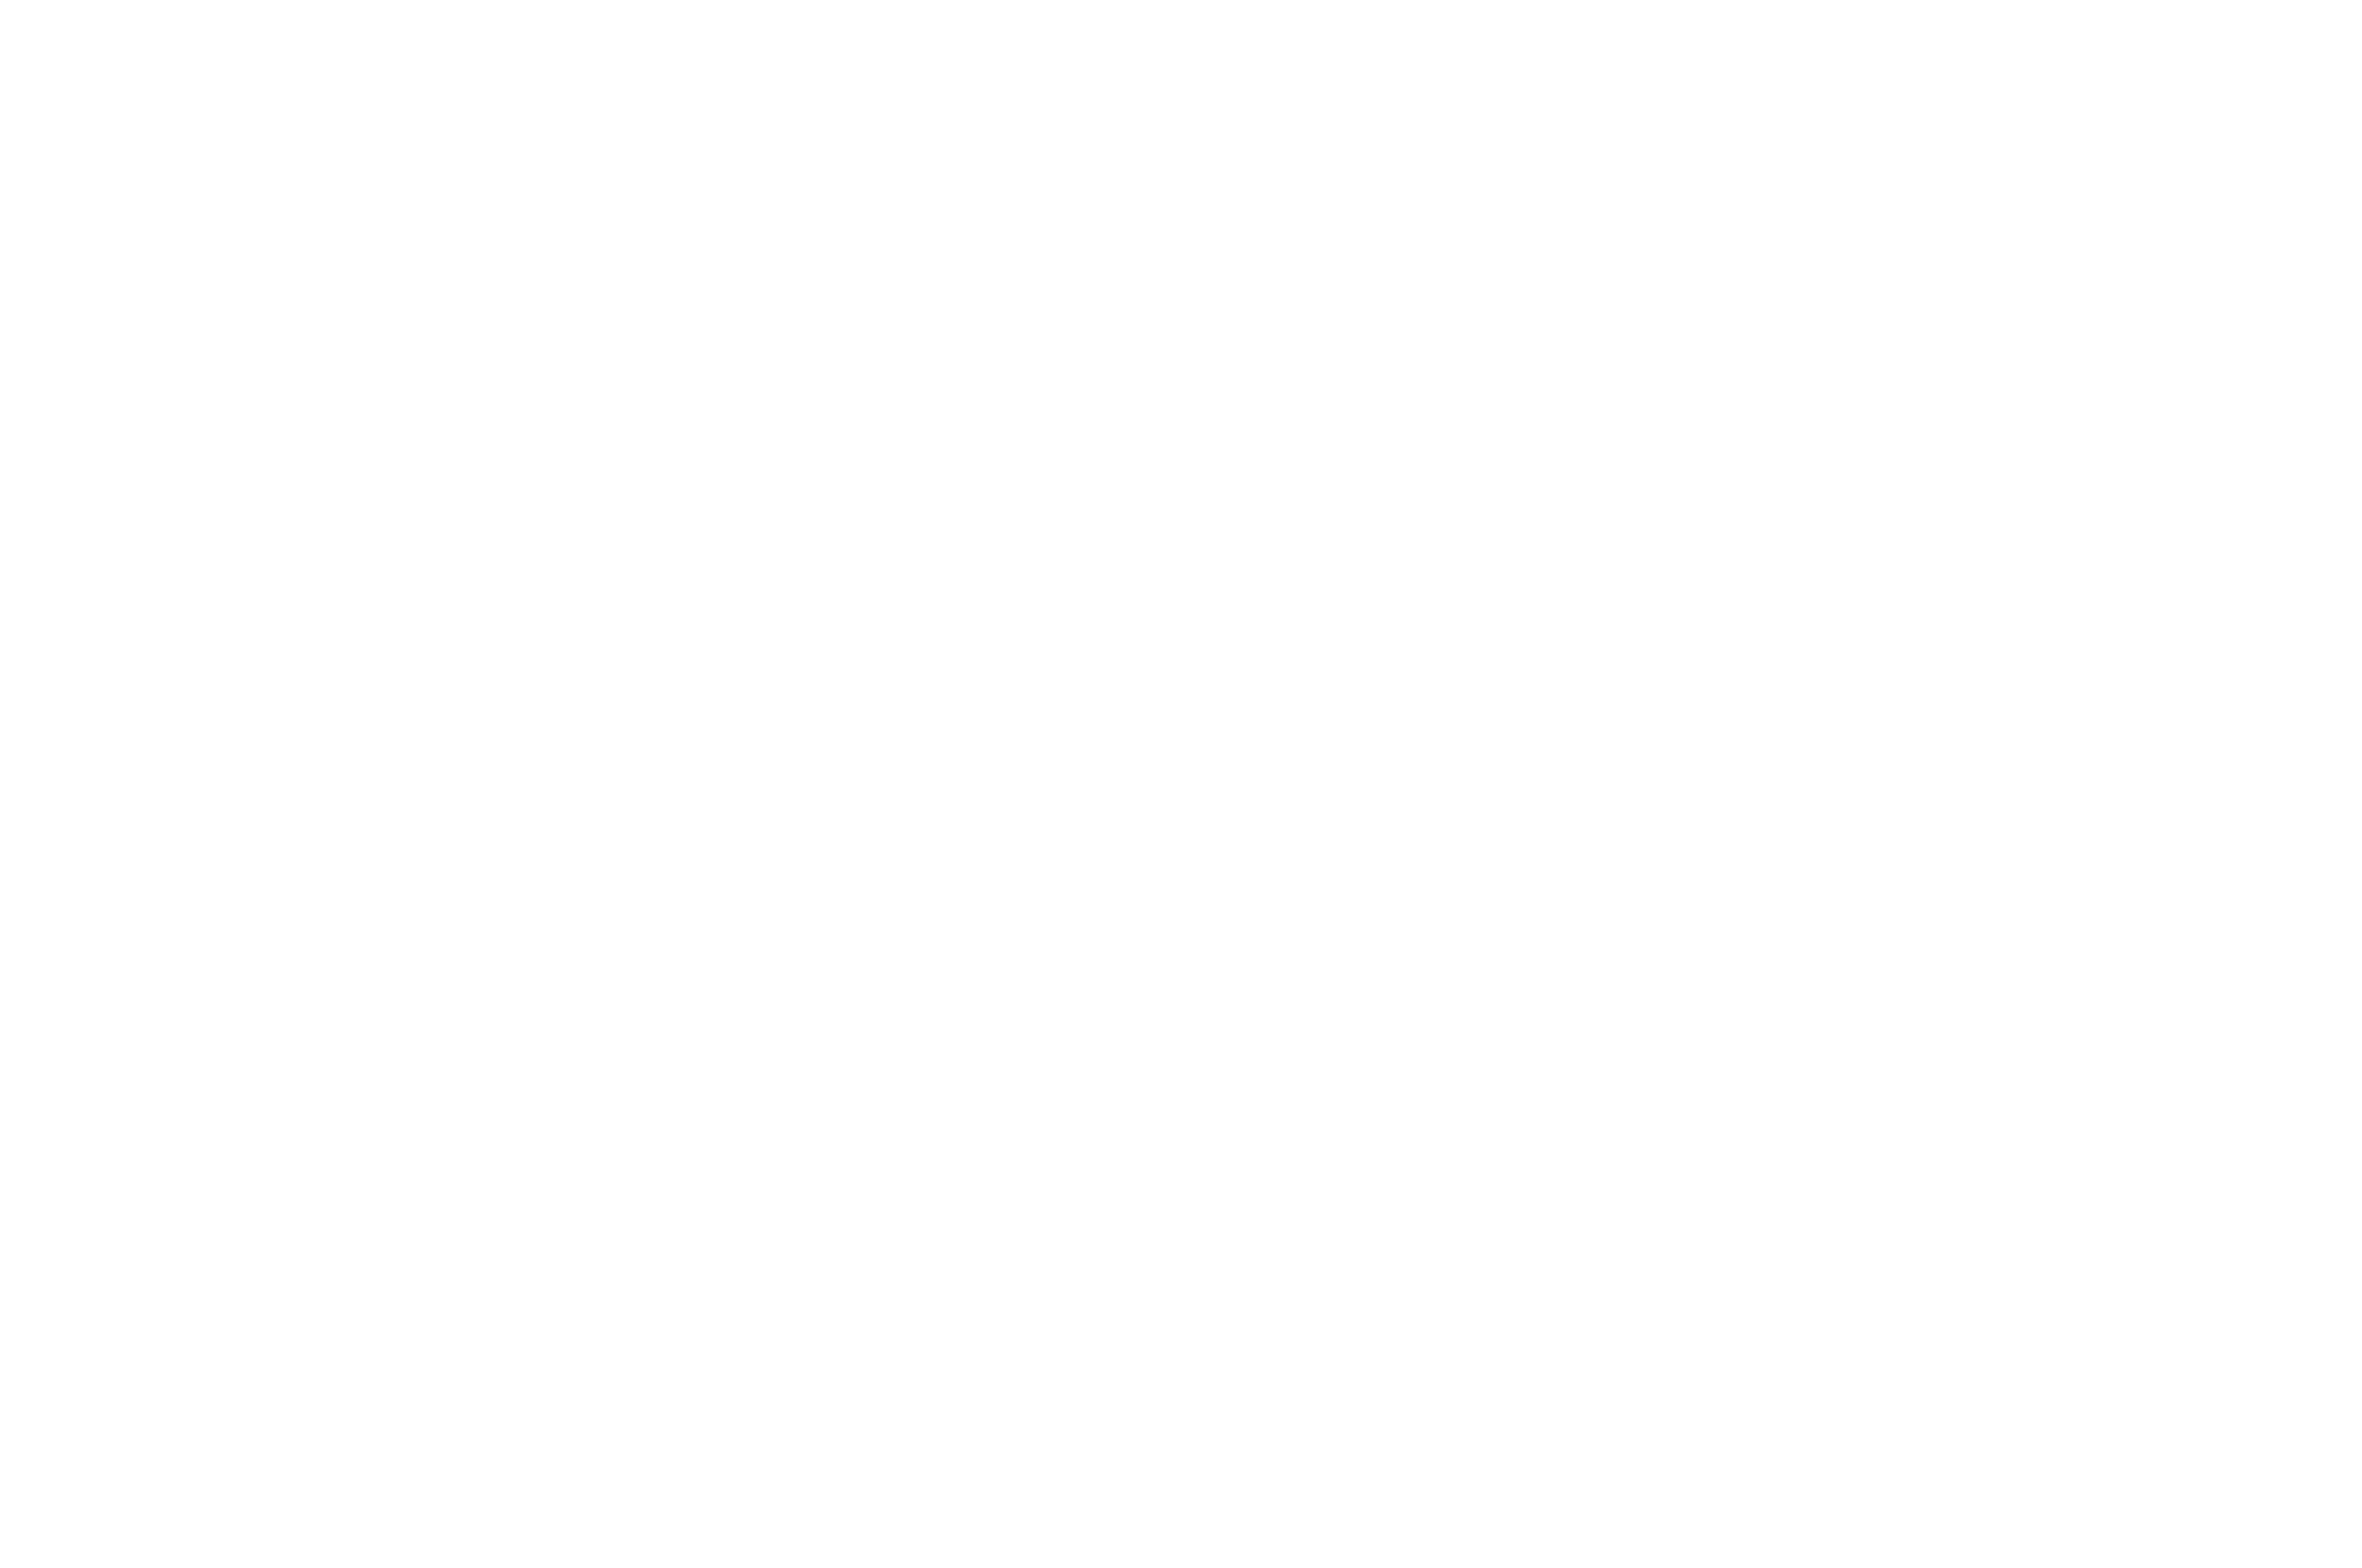 Sydney Webfest Official Selection Laurel 2023